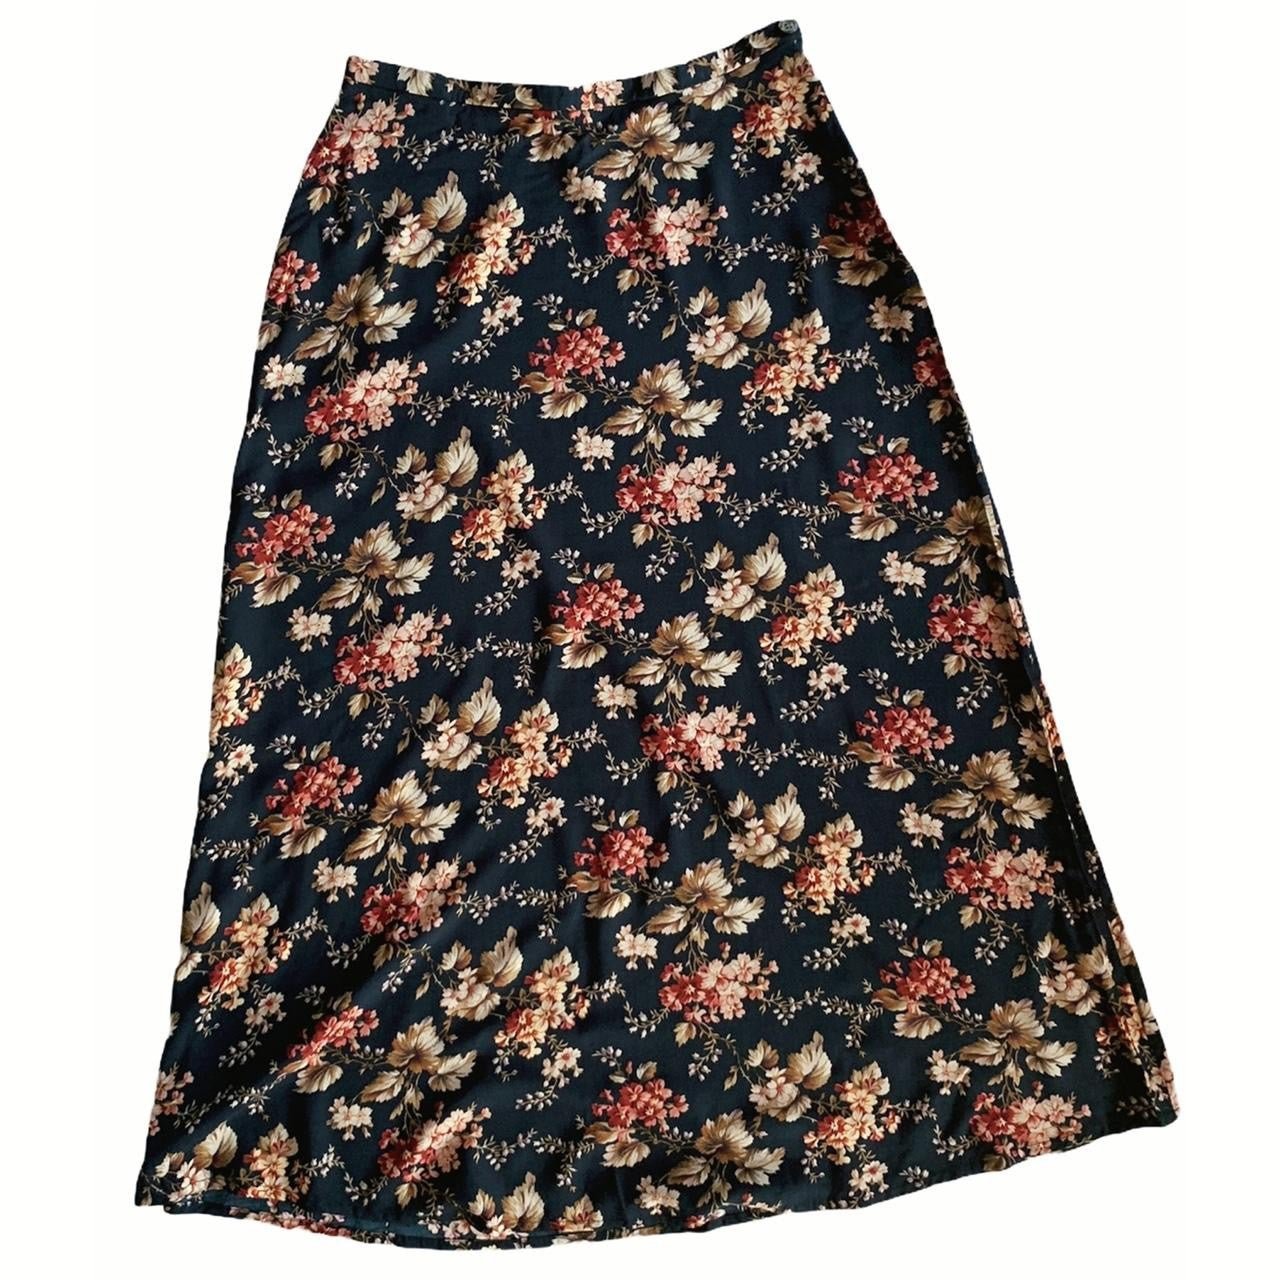 Gorgeous Vintage Floral Maxi Skirt K9DiJxpWX Discount